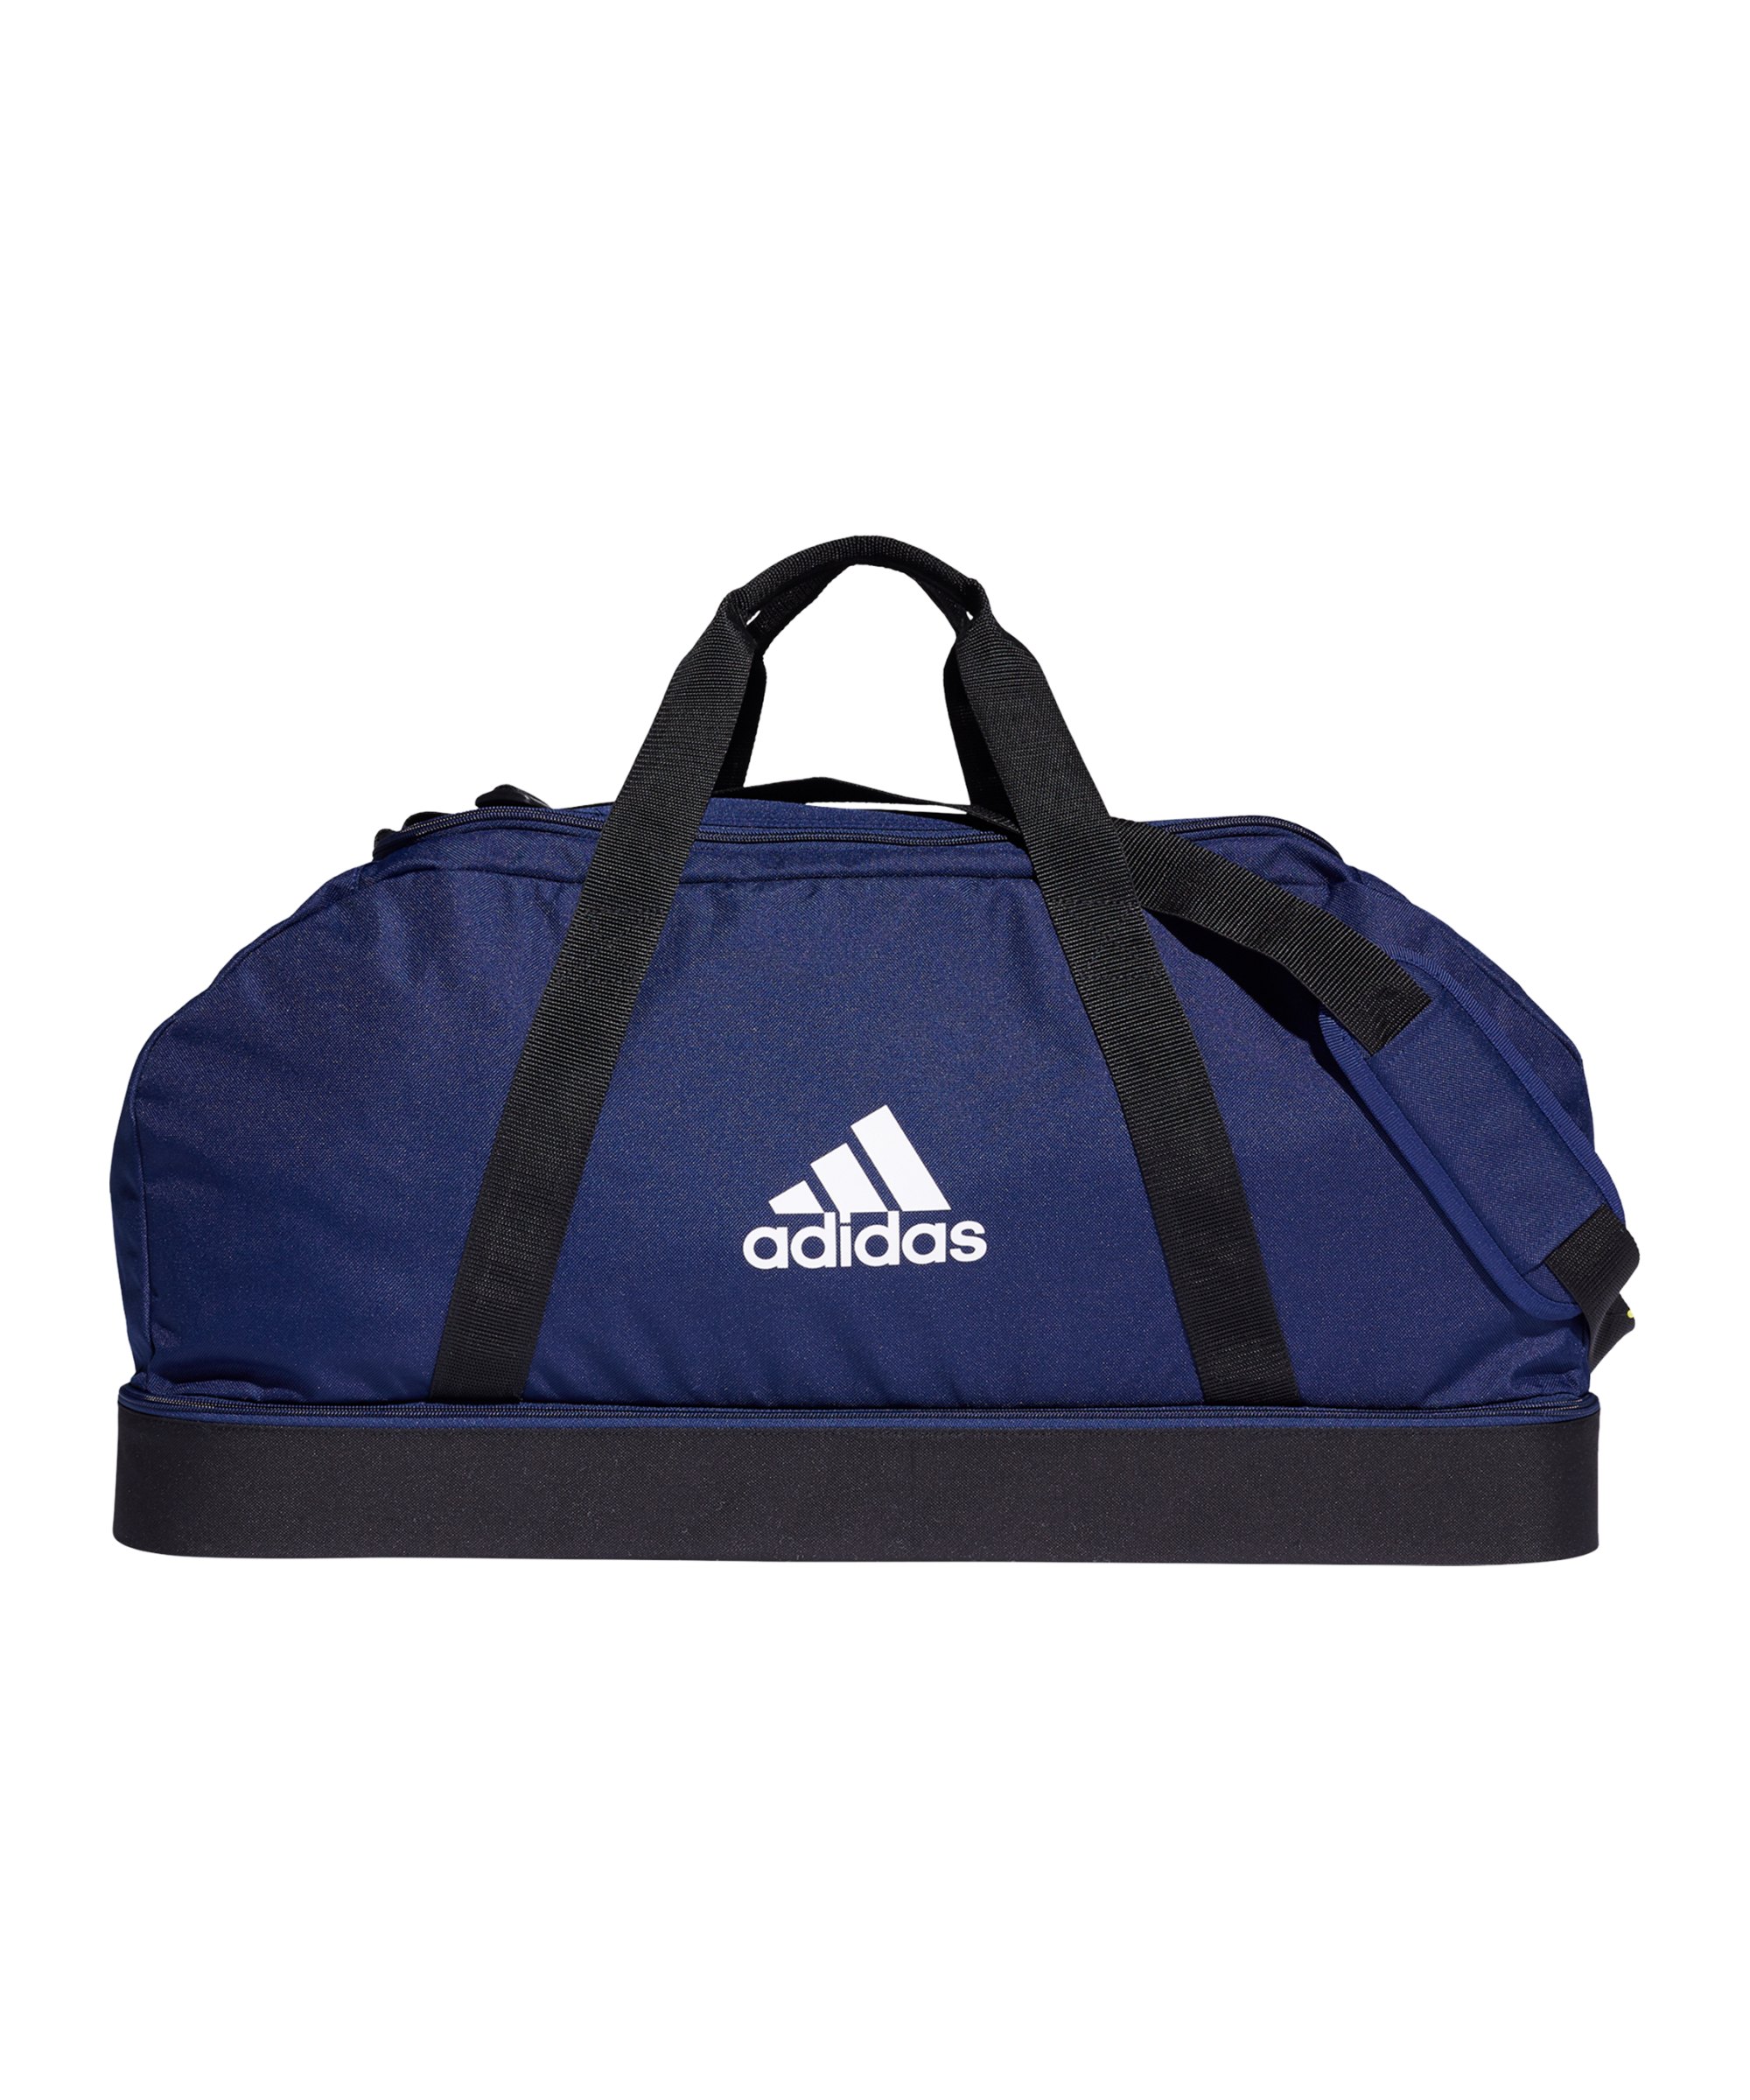 adidas Tiro Duffel Bag Gr. L mit Bodenfach Blau - blau